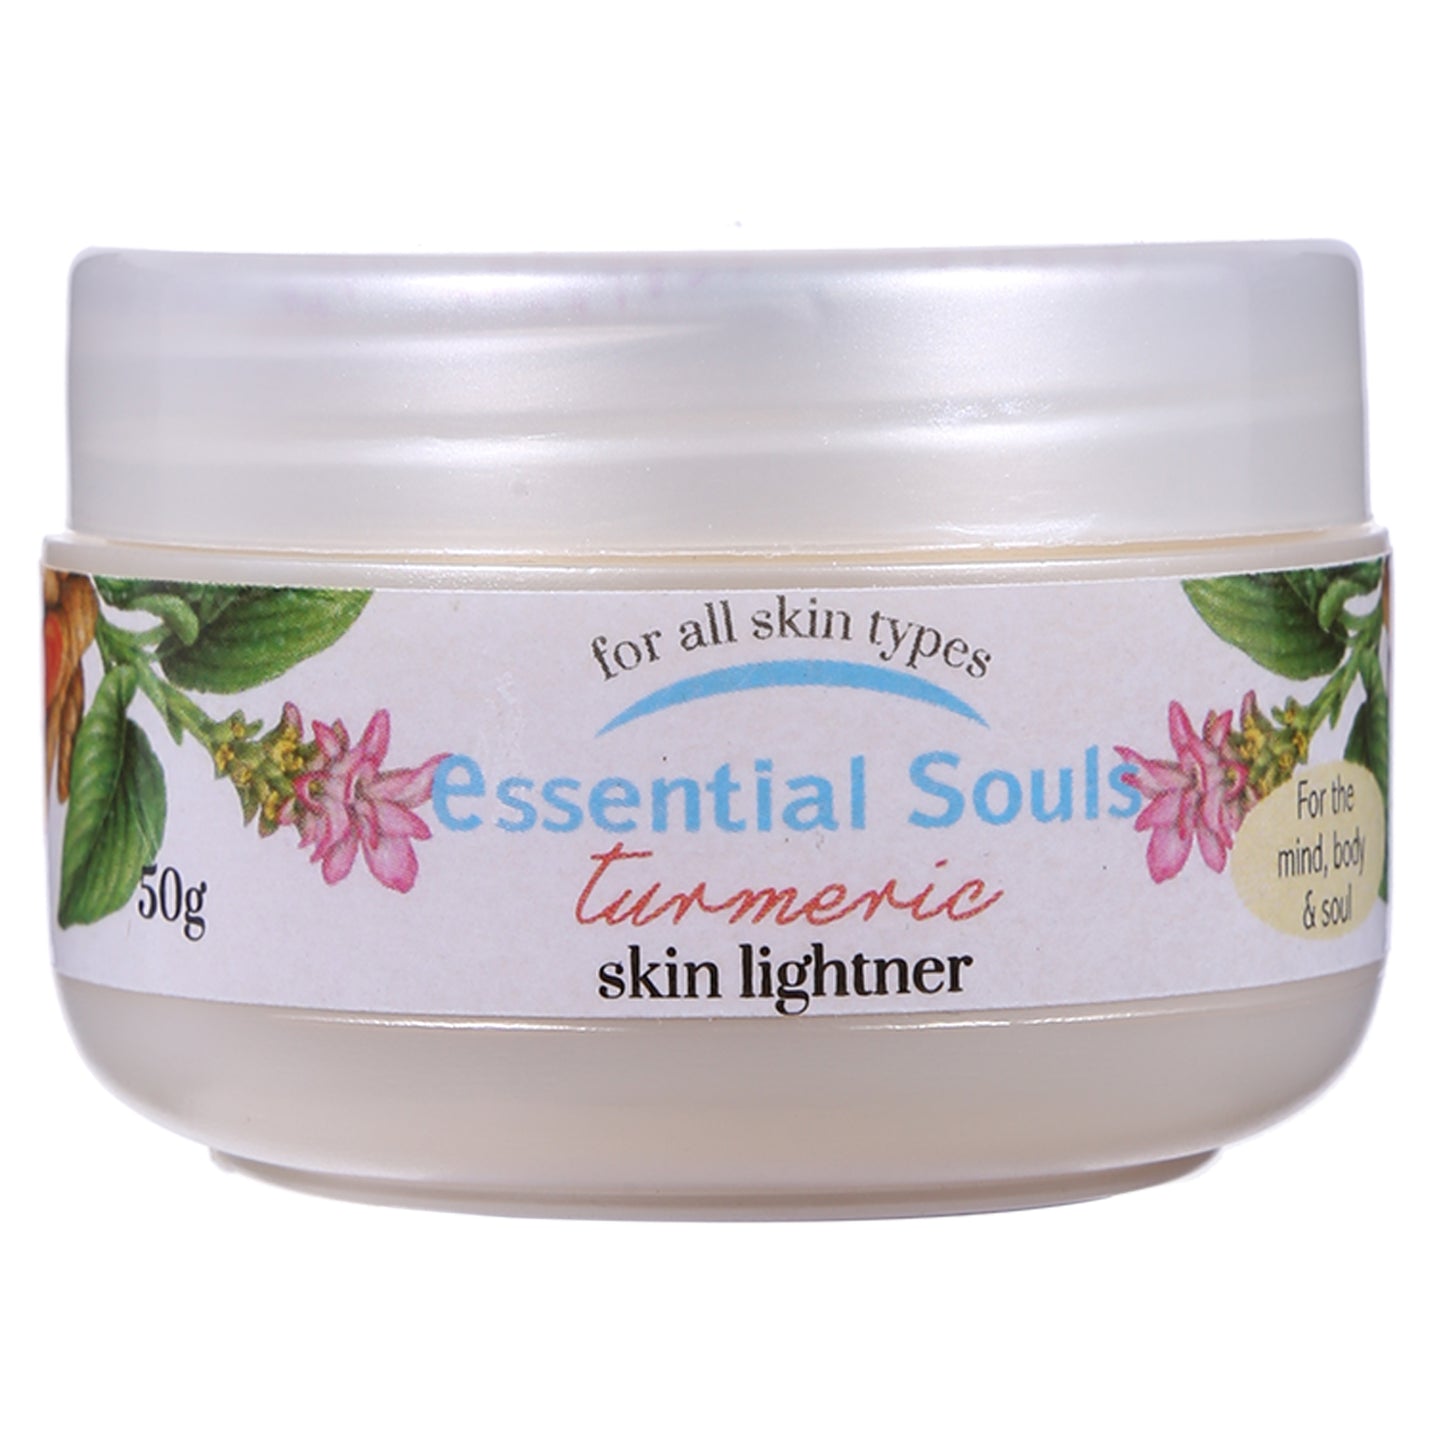 Essential Souls Turmeric Skin Lightner - 50g